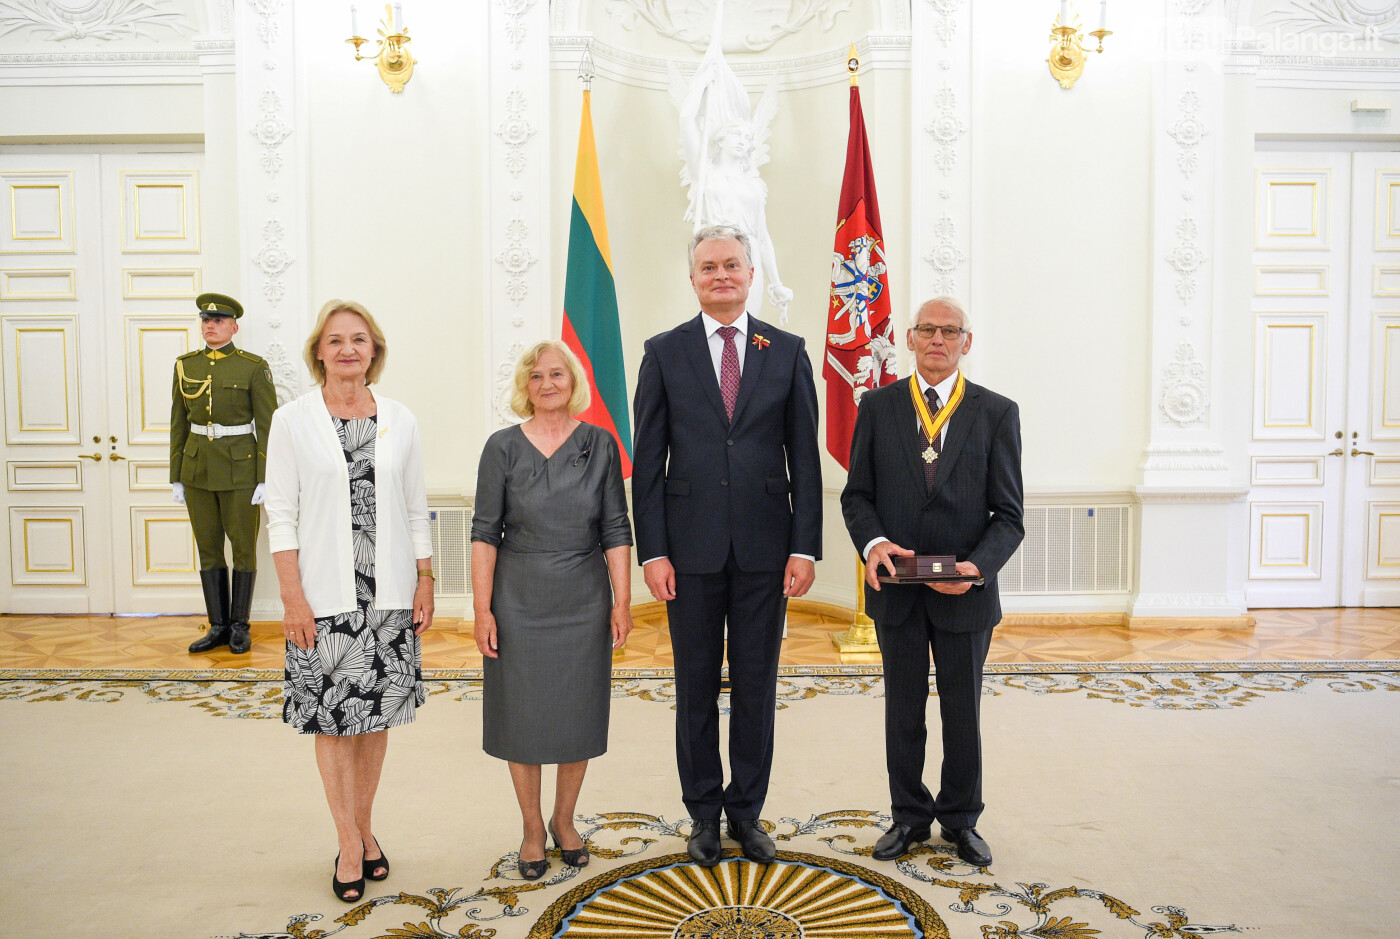 Vladui Žulkui - valstybinis apdovanojimas iš Prezidento rankų, nuotrauka-1, © Roberto Dačkaus (Prezidentūra) nuotr.